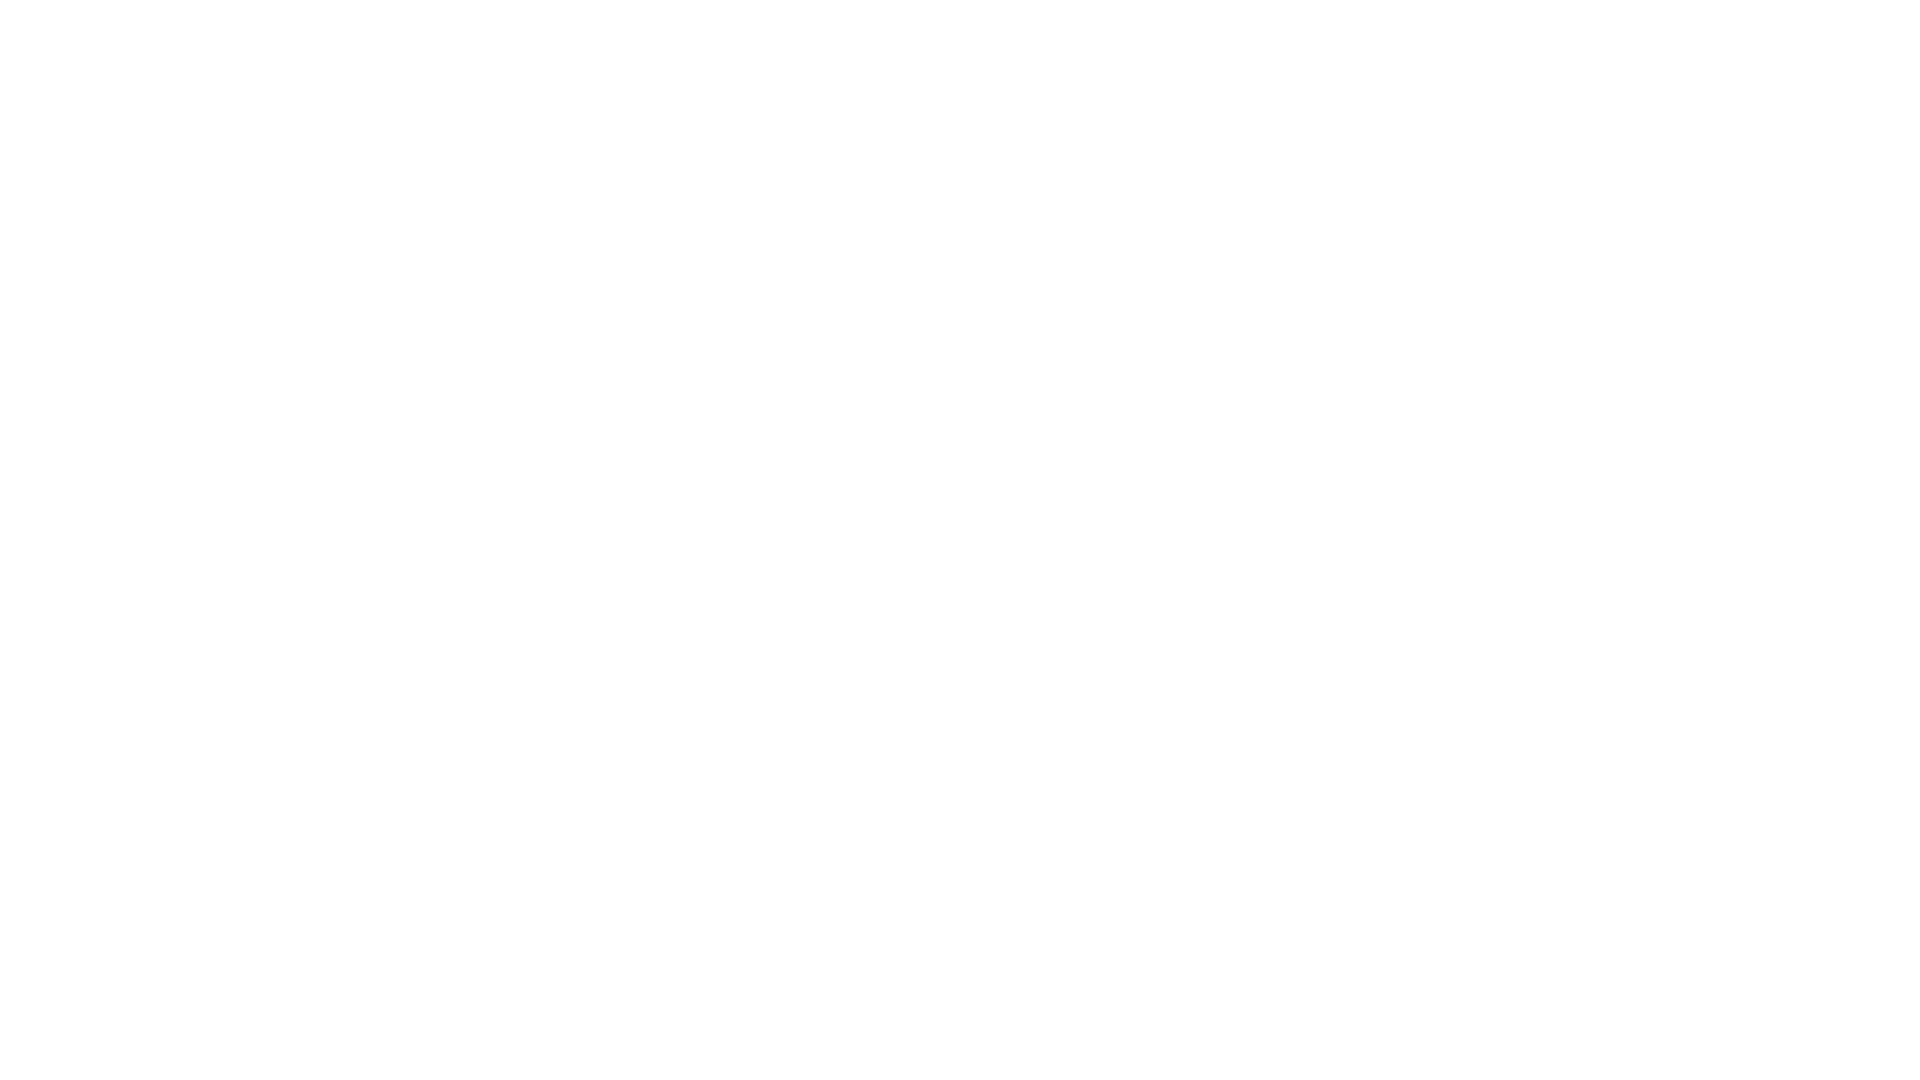 Chiaradifatto - Marketing, Comunicazione, Eventi